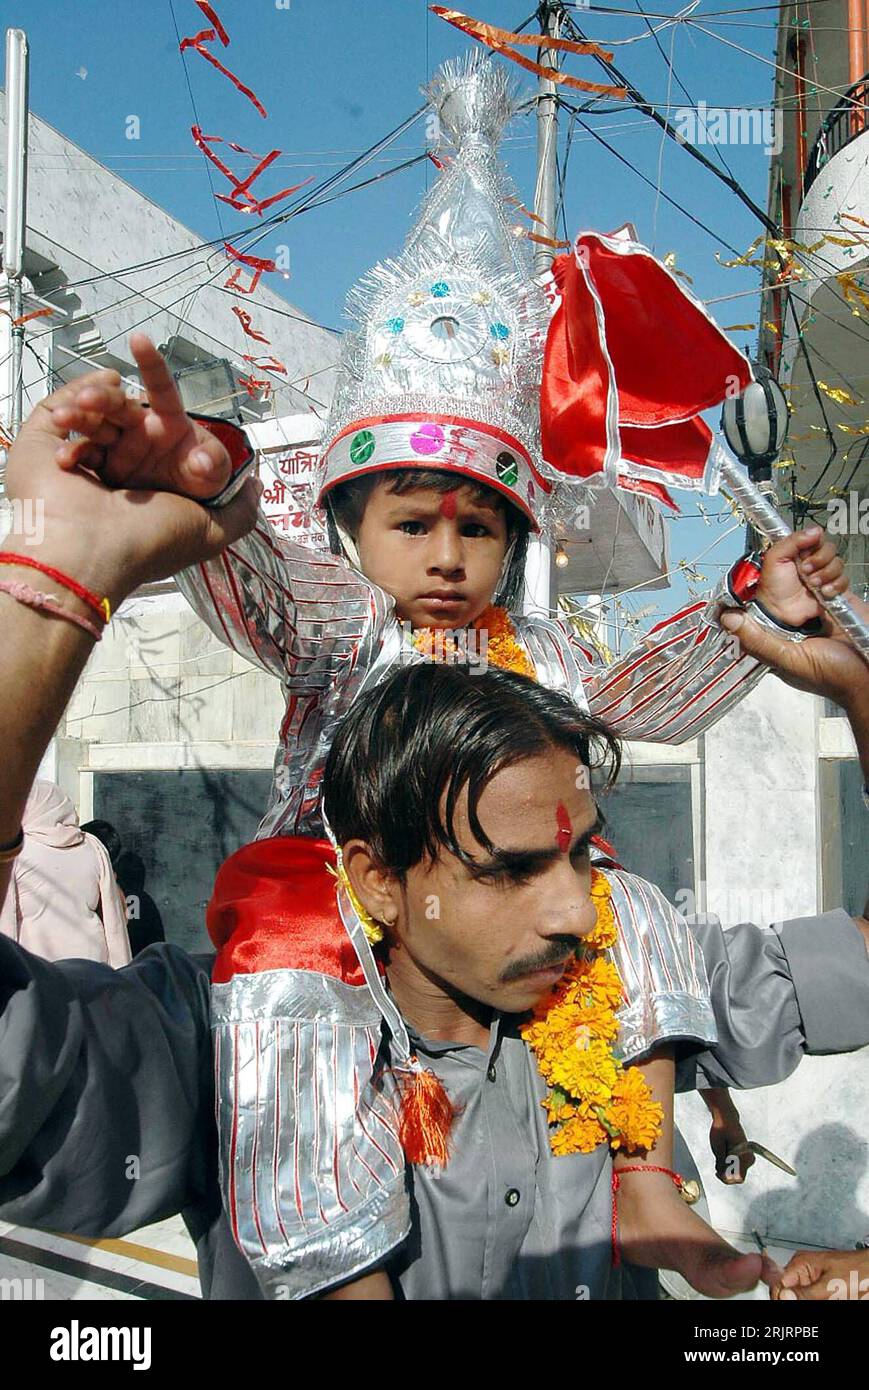 Bildnummer: 51471785 Datum: 22.09.2006 Copyright: imago/Xinhua Junge in traditionellem Kostüm sitzt auf den Schultern Seines Vaters anlässlich des Hindu Festivals - Navratri - in Amritsar - PUBLICATIONxNOTxINxCHN, Personen; 2006, Amritsar, kind, Kinder, Kostüme, Tradition, Land, Leute, traditionelle Feste, Jungen, Mann, Männer, Sohn; , hoch, Kbdig, Gruppenbild, Indien, Hinduismus, Religion, Foto Stock